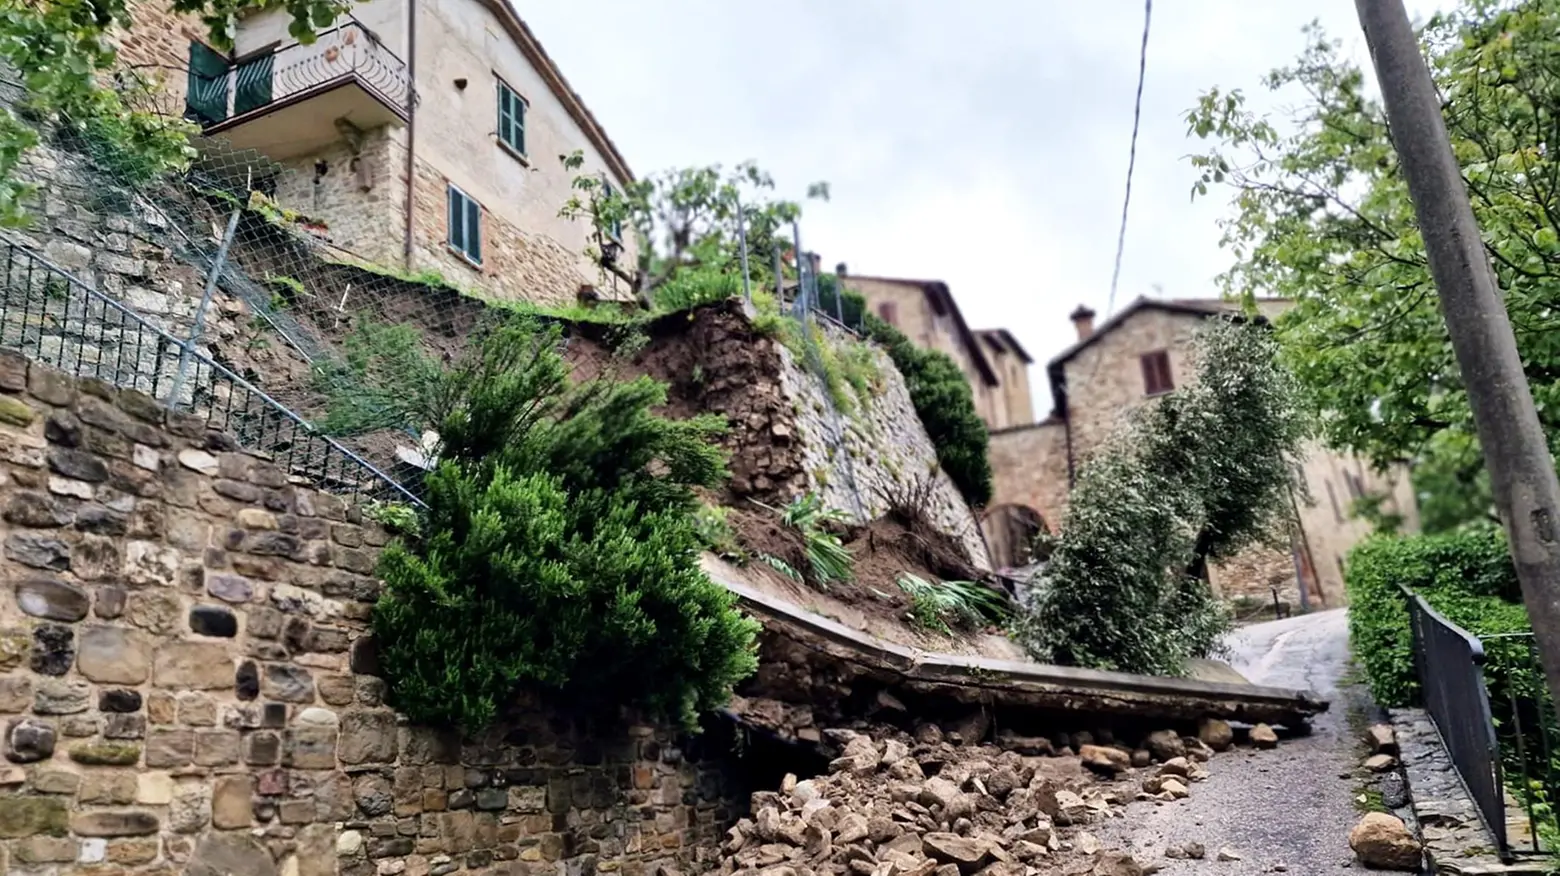 Crolli nei centri storici  Danni a Macerata Feltria  e rischi di isolamento  a Monte Grimano Terme